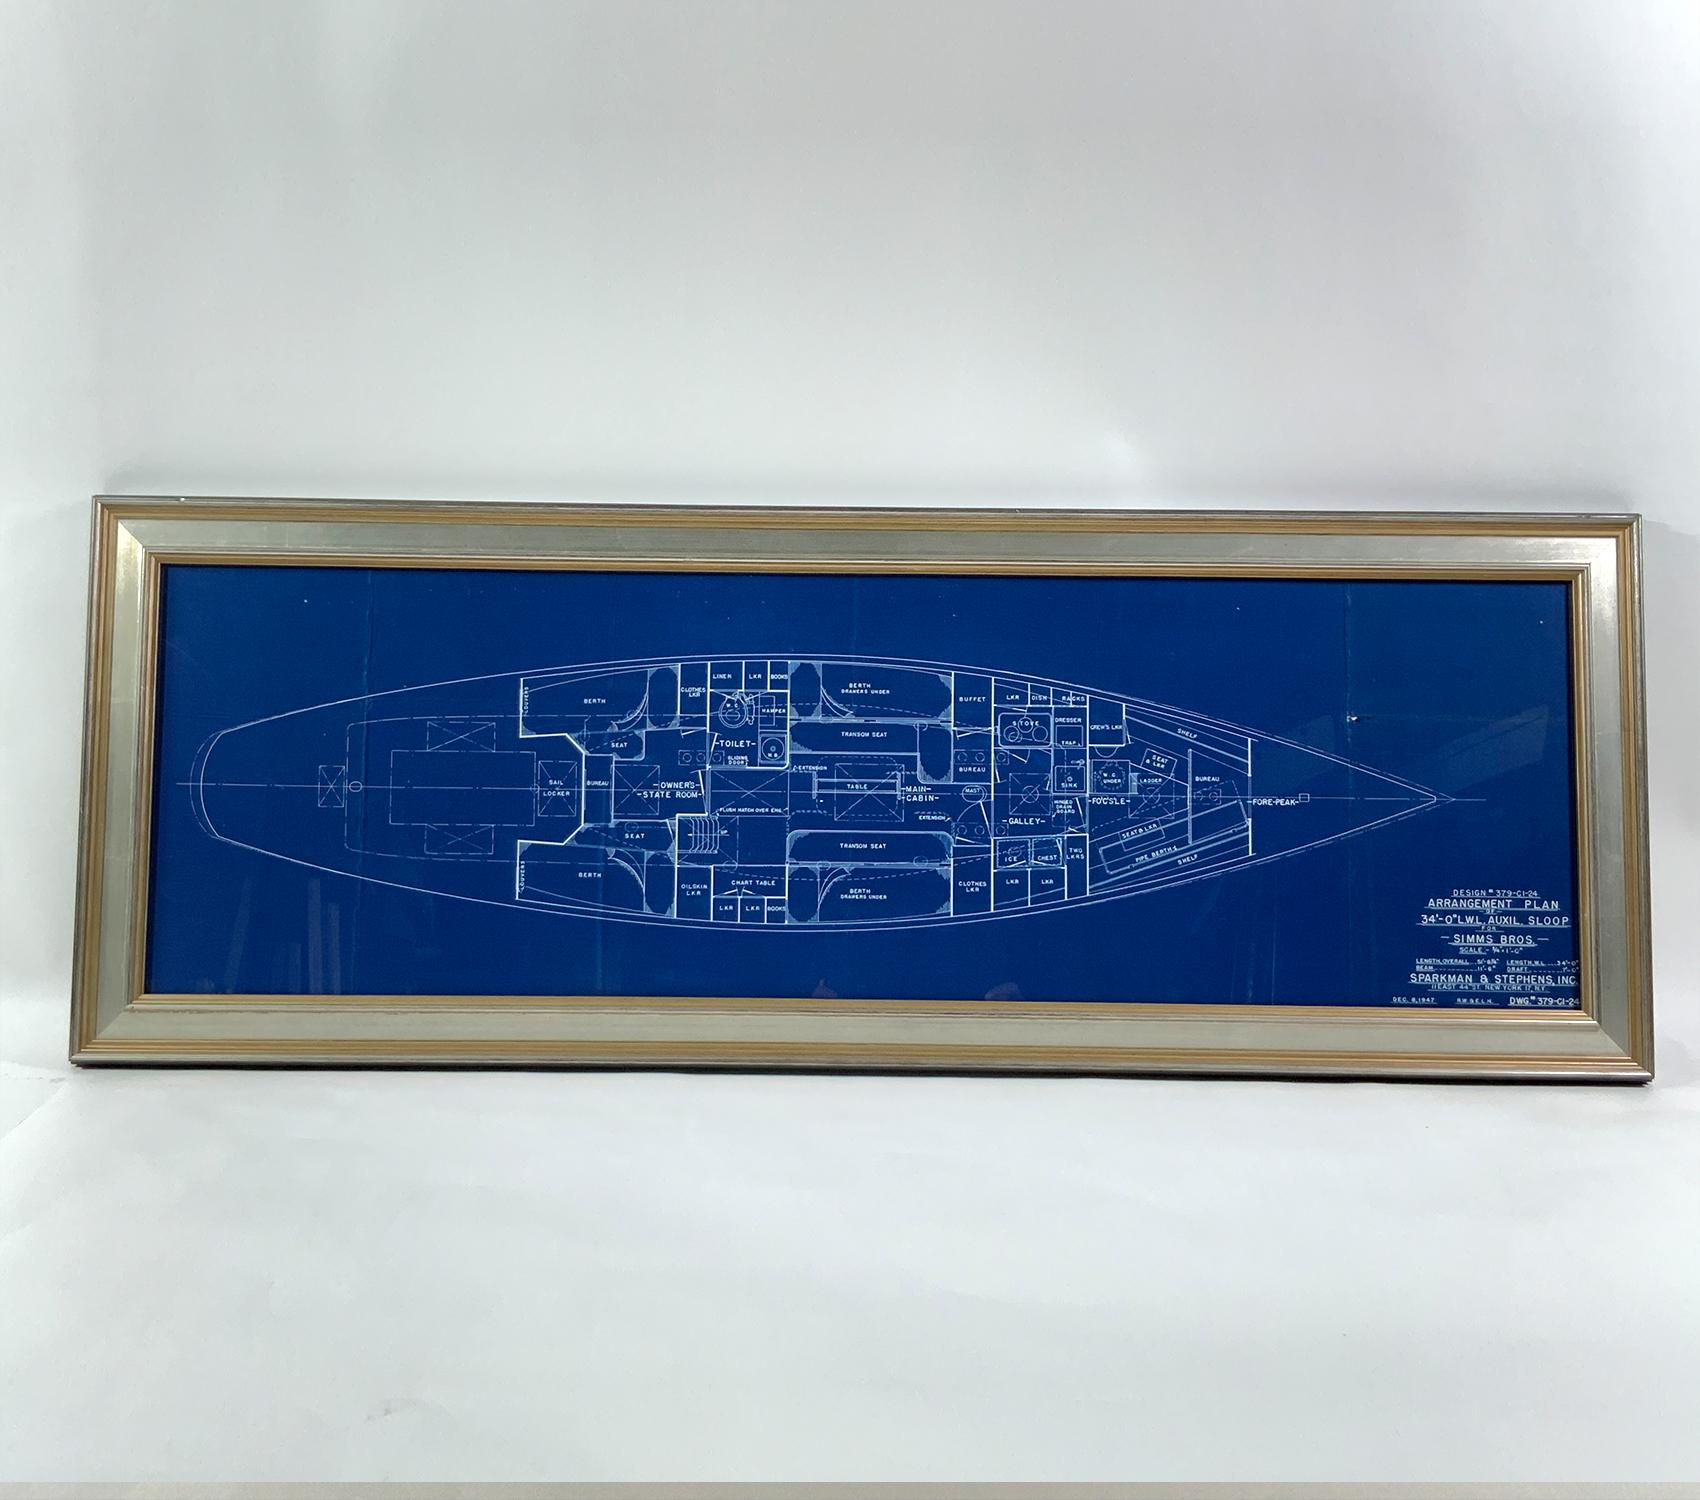 Plan original du yacht de Sparkman et Stevens, le Sloop auxiliaire Venture III. Construit chez Simms Brothers à Dorchester, Mass en 1949. Conçu par Olin Stevens et Aage Nielsen. Un plan très historique venant des maîtres. La légende indique : 